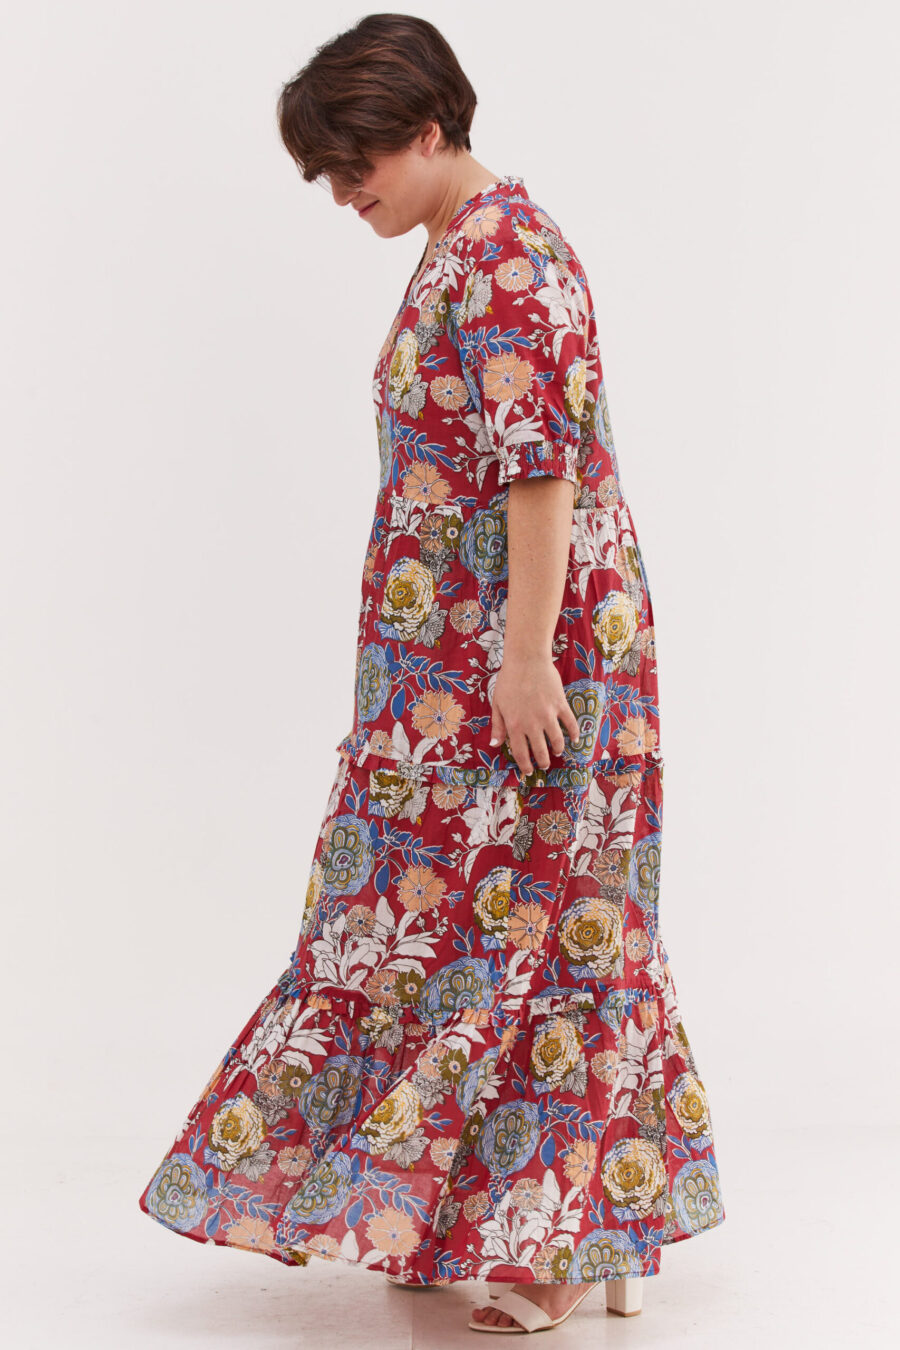 שמלת אפרת | שמלת מקסי בעיצוב ייחודי - בלוסום אדום, הדפס פרחוני צבעוני על רקע אדום